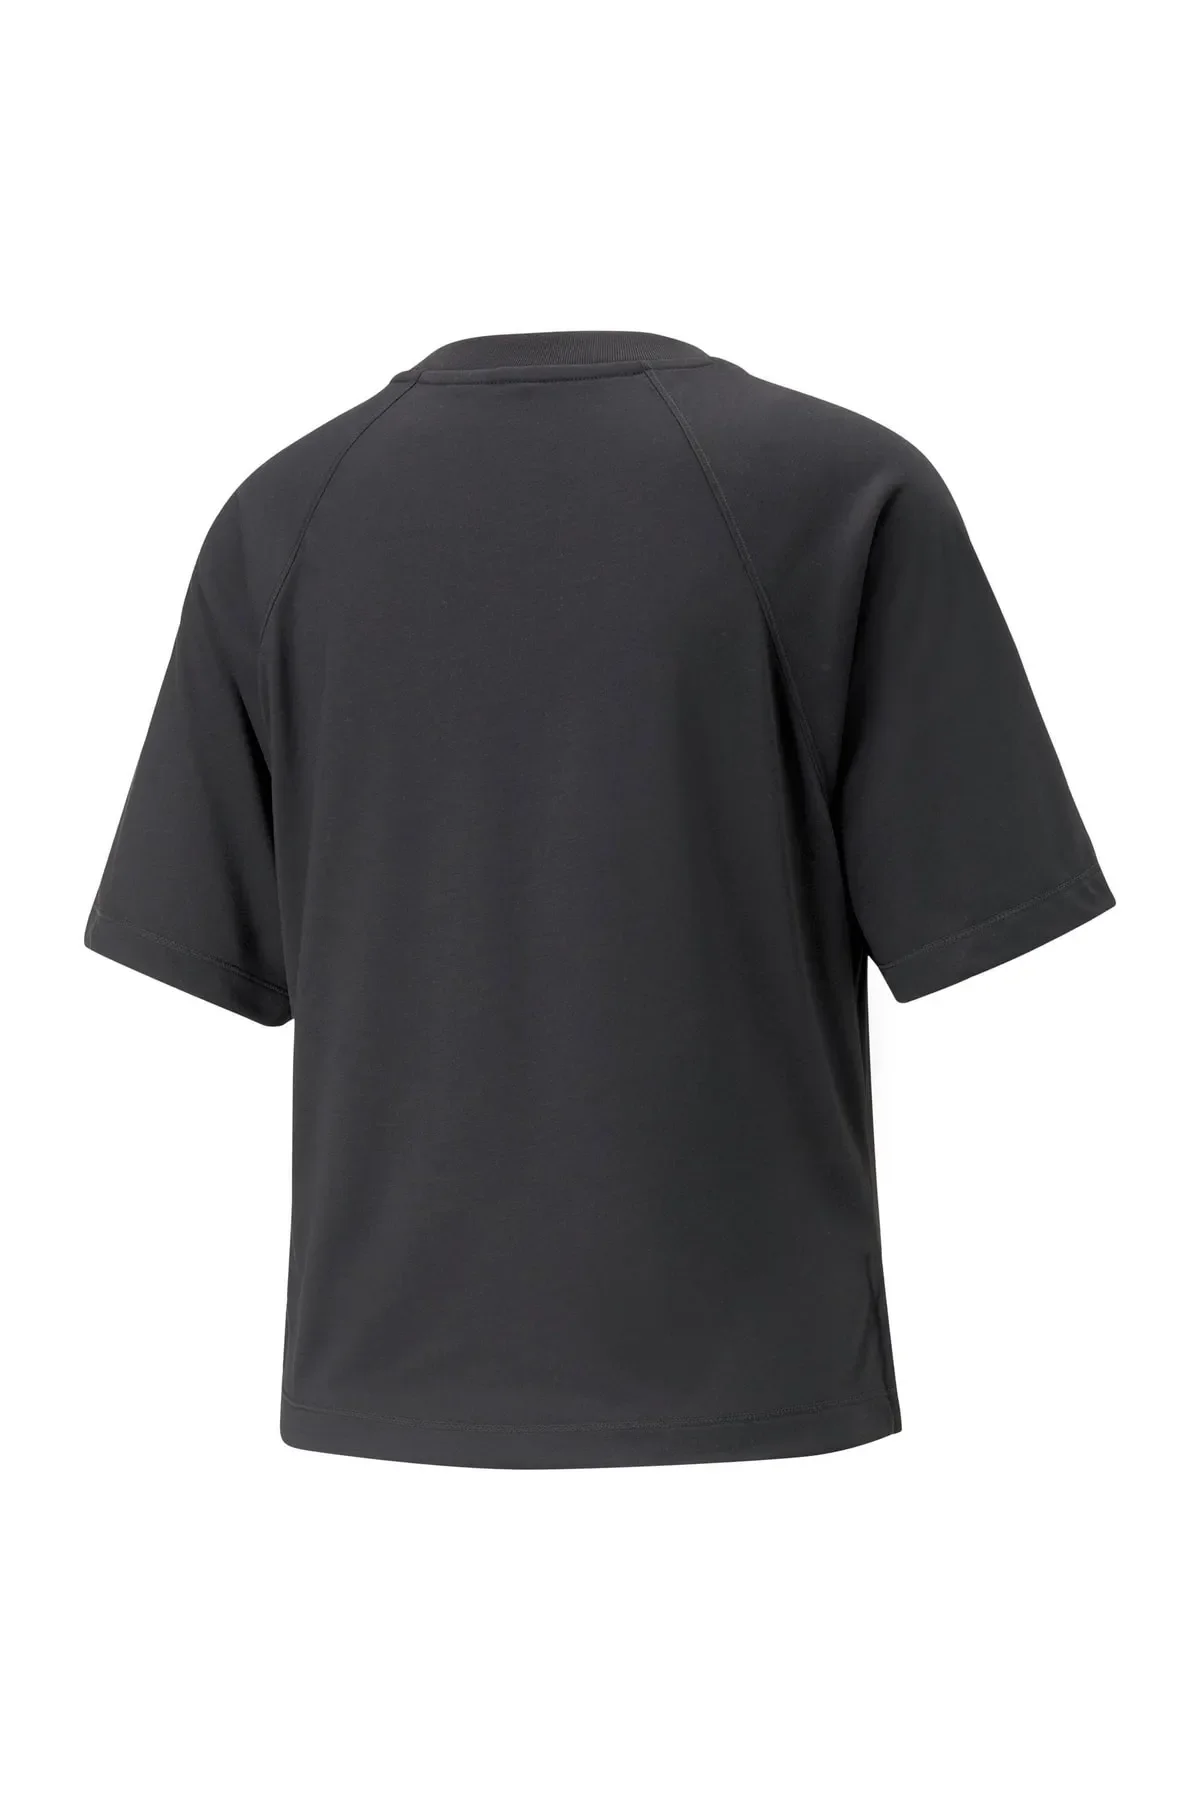 Modern Sports Tee Kadın T-shirt 673095-Siyah - 2